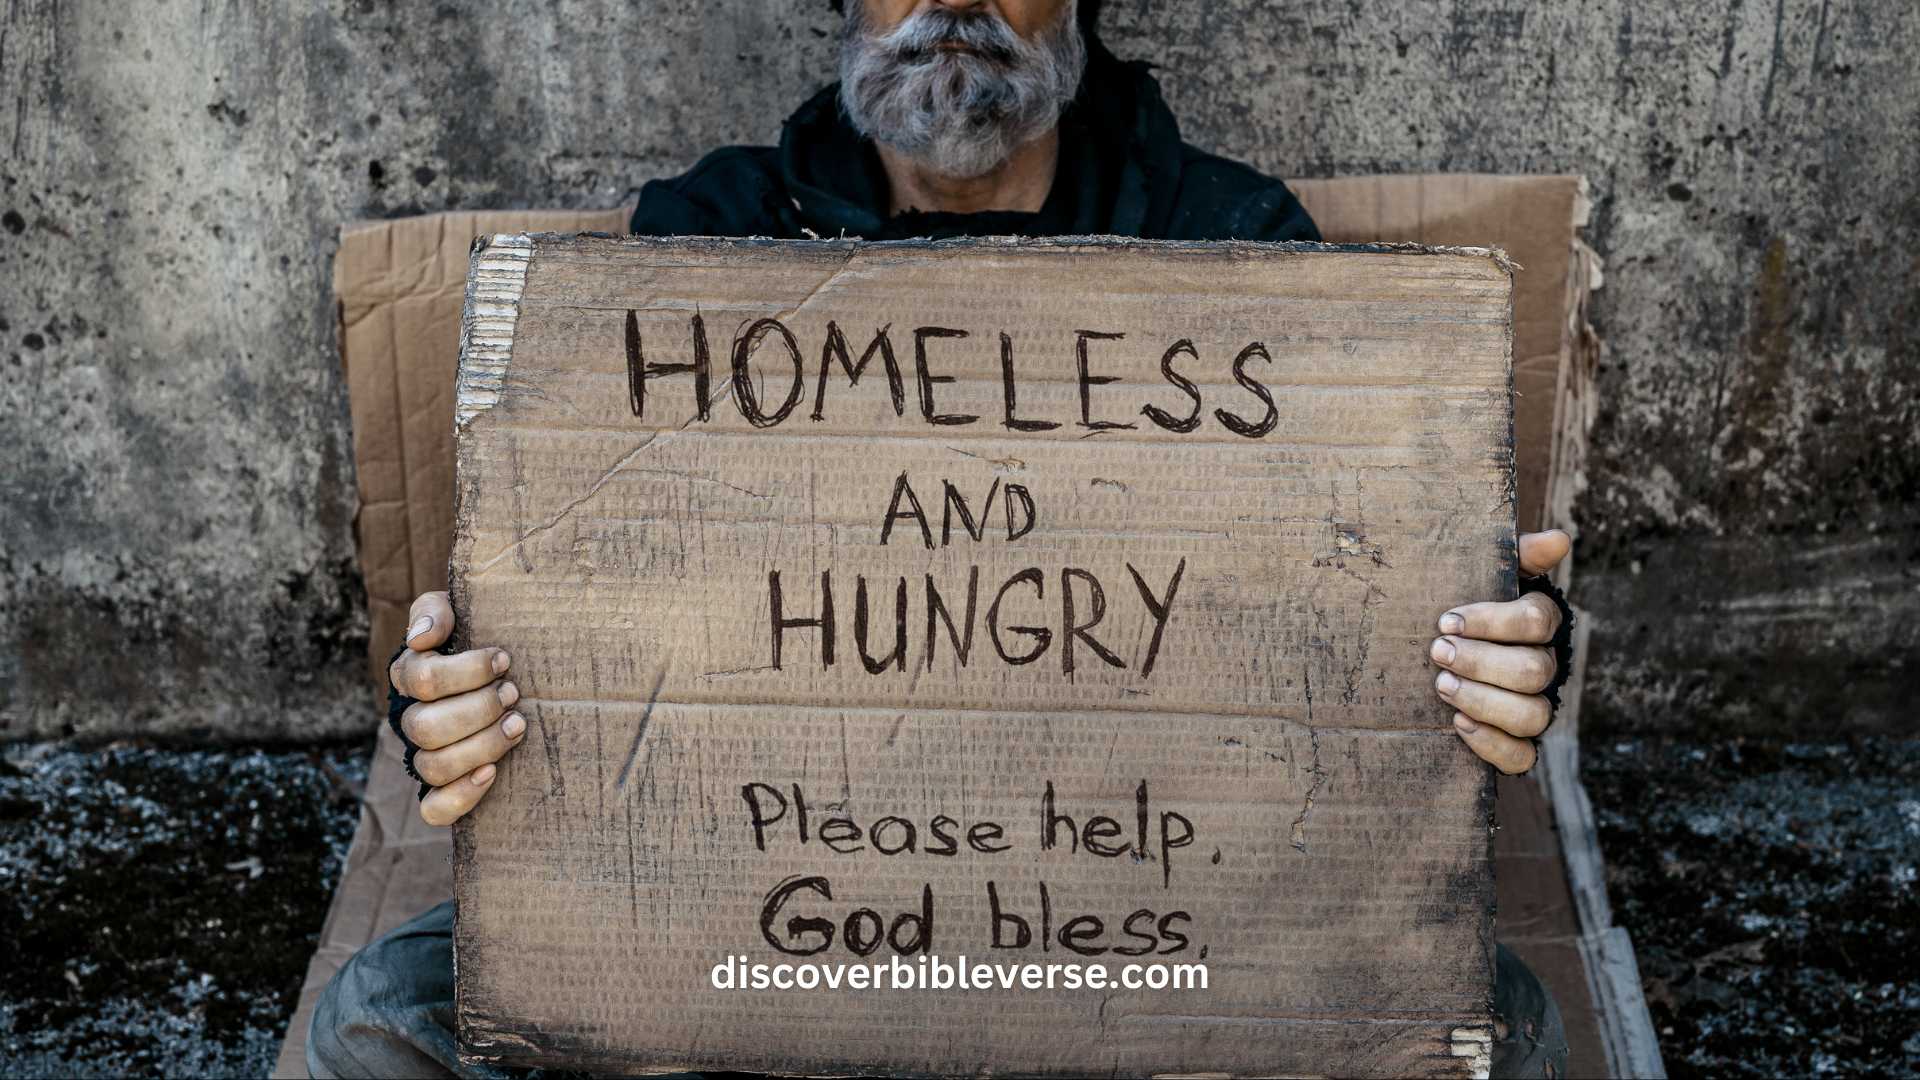 Prayer For The Homeless